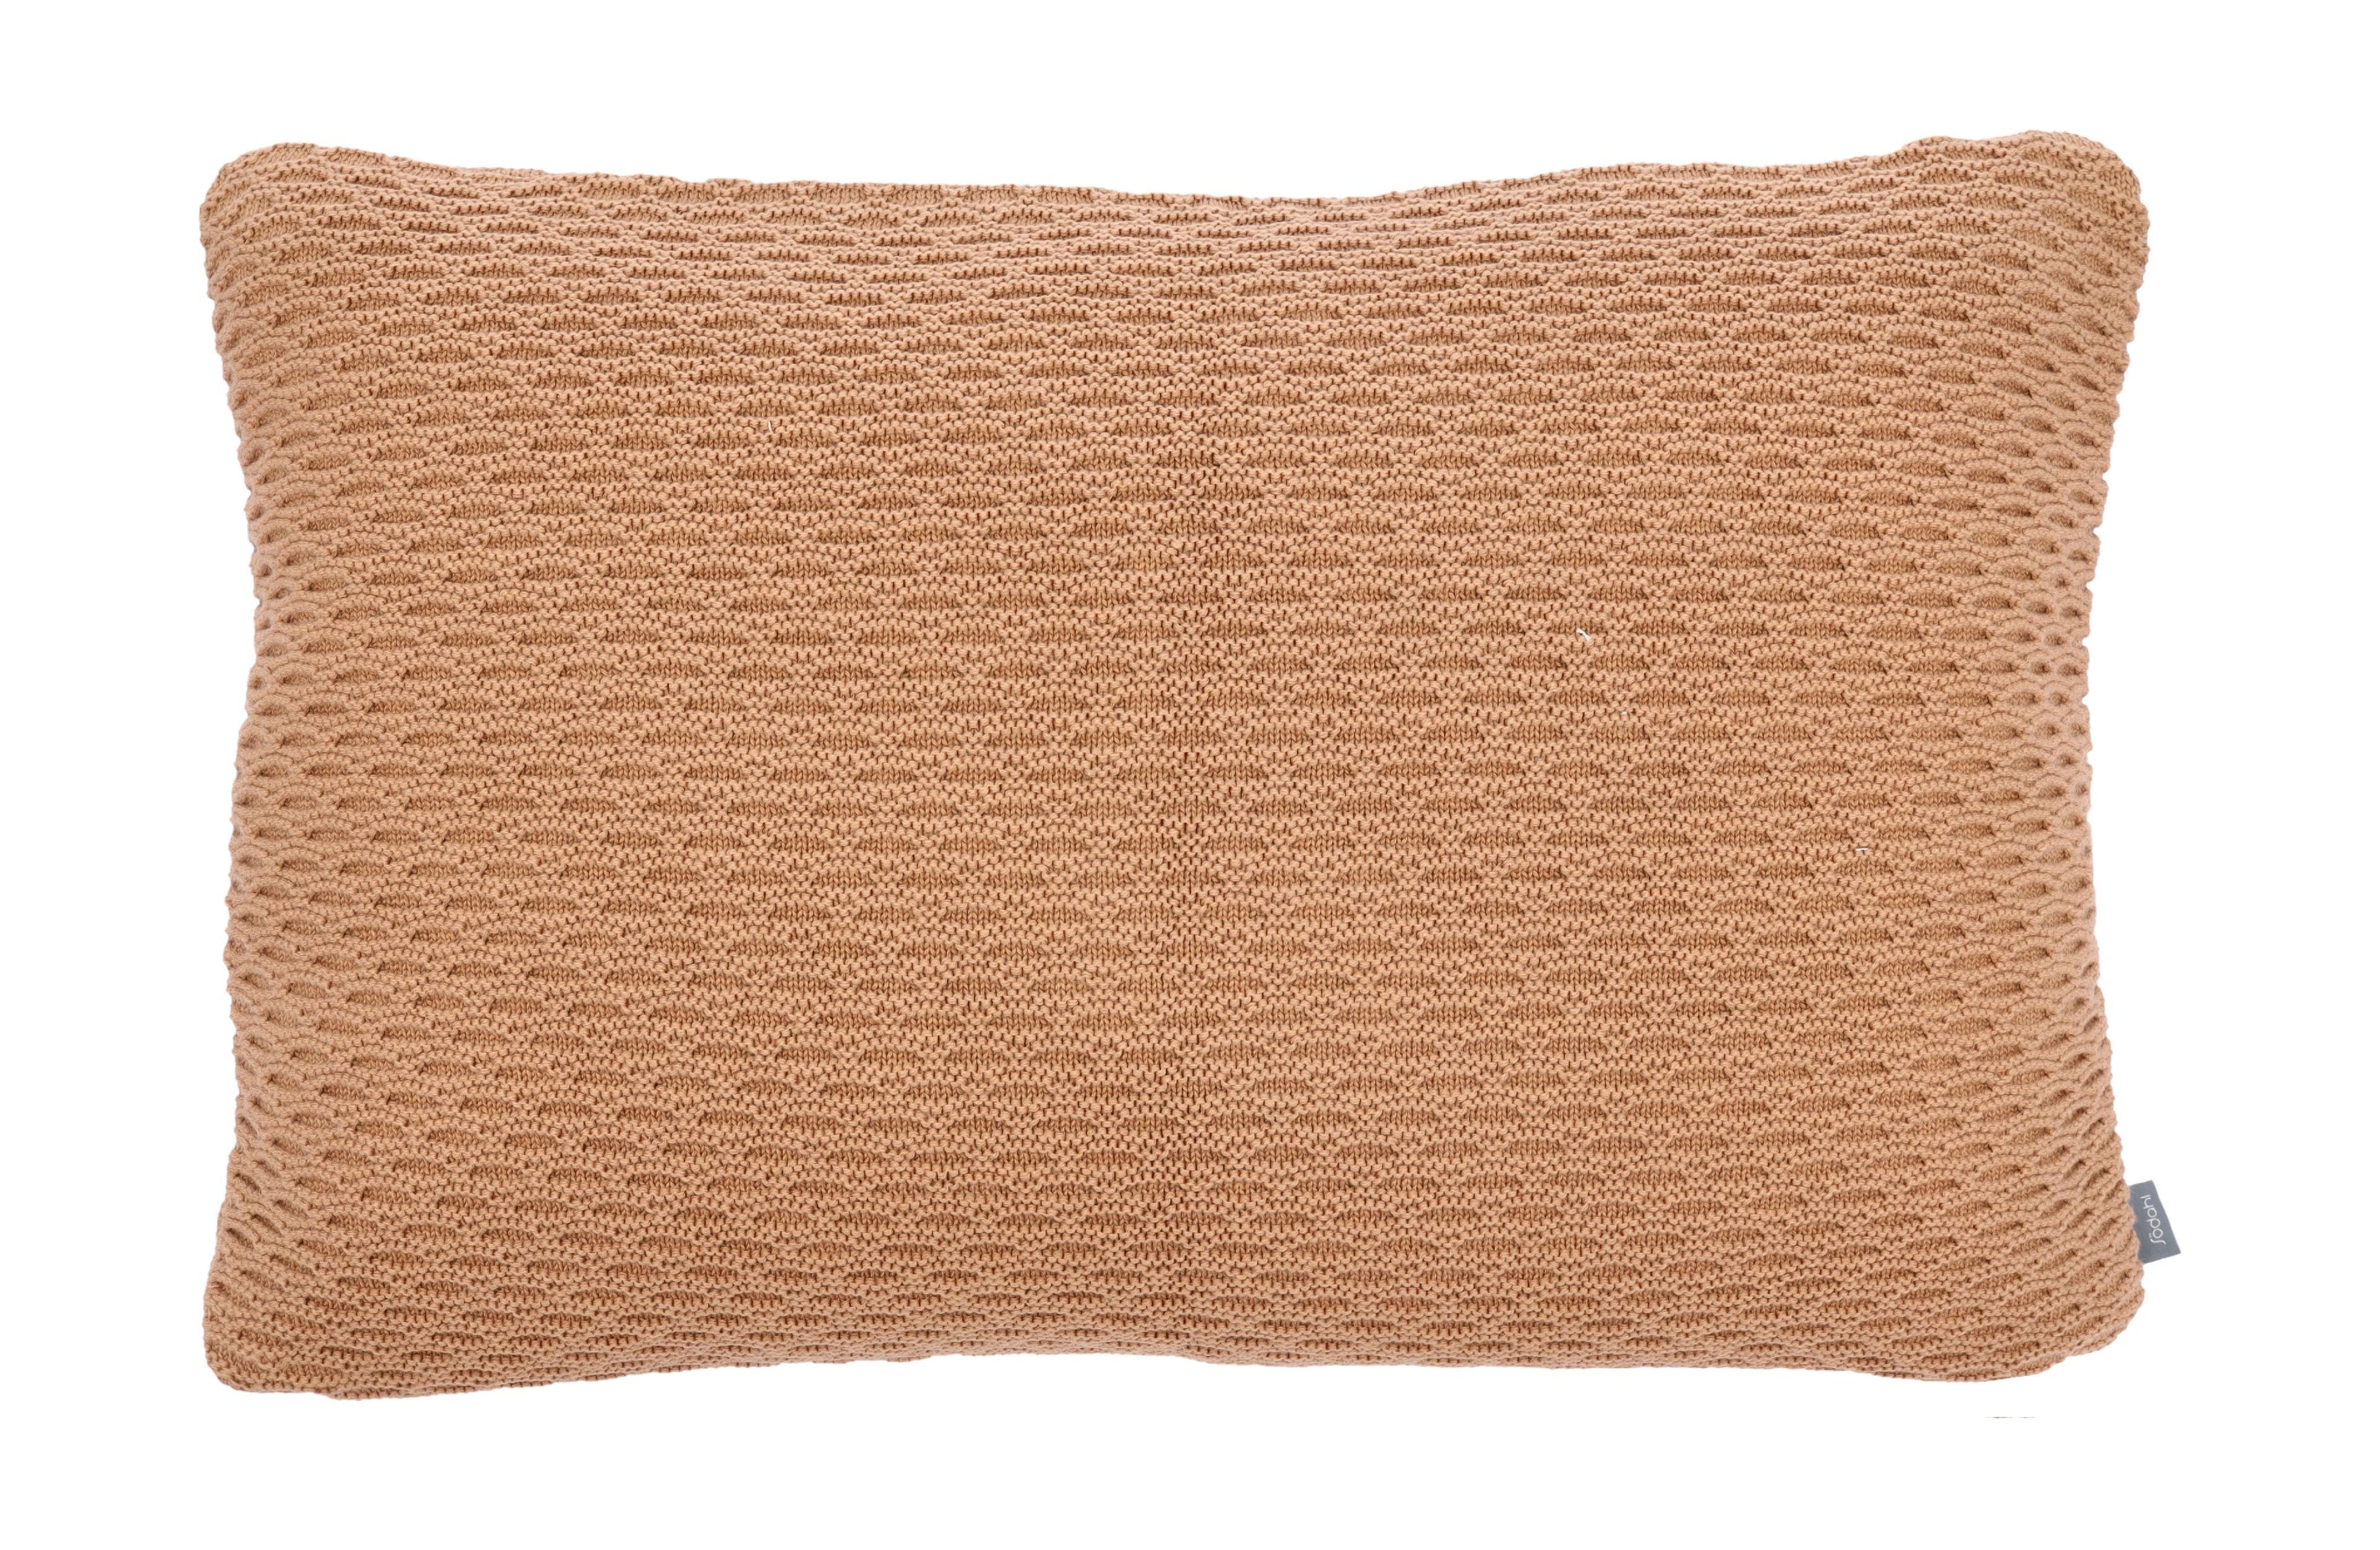 Södahl Wave Knit Cushion Cover 40x60 cm, Camel